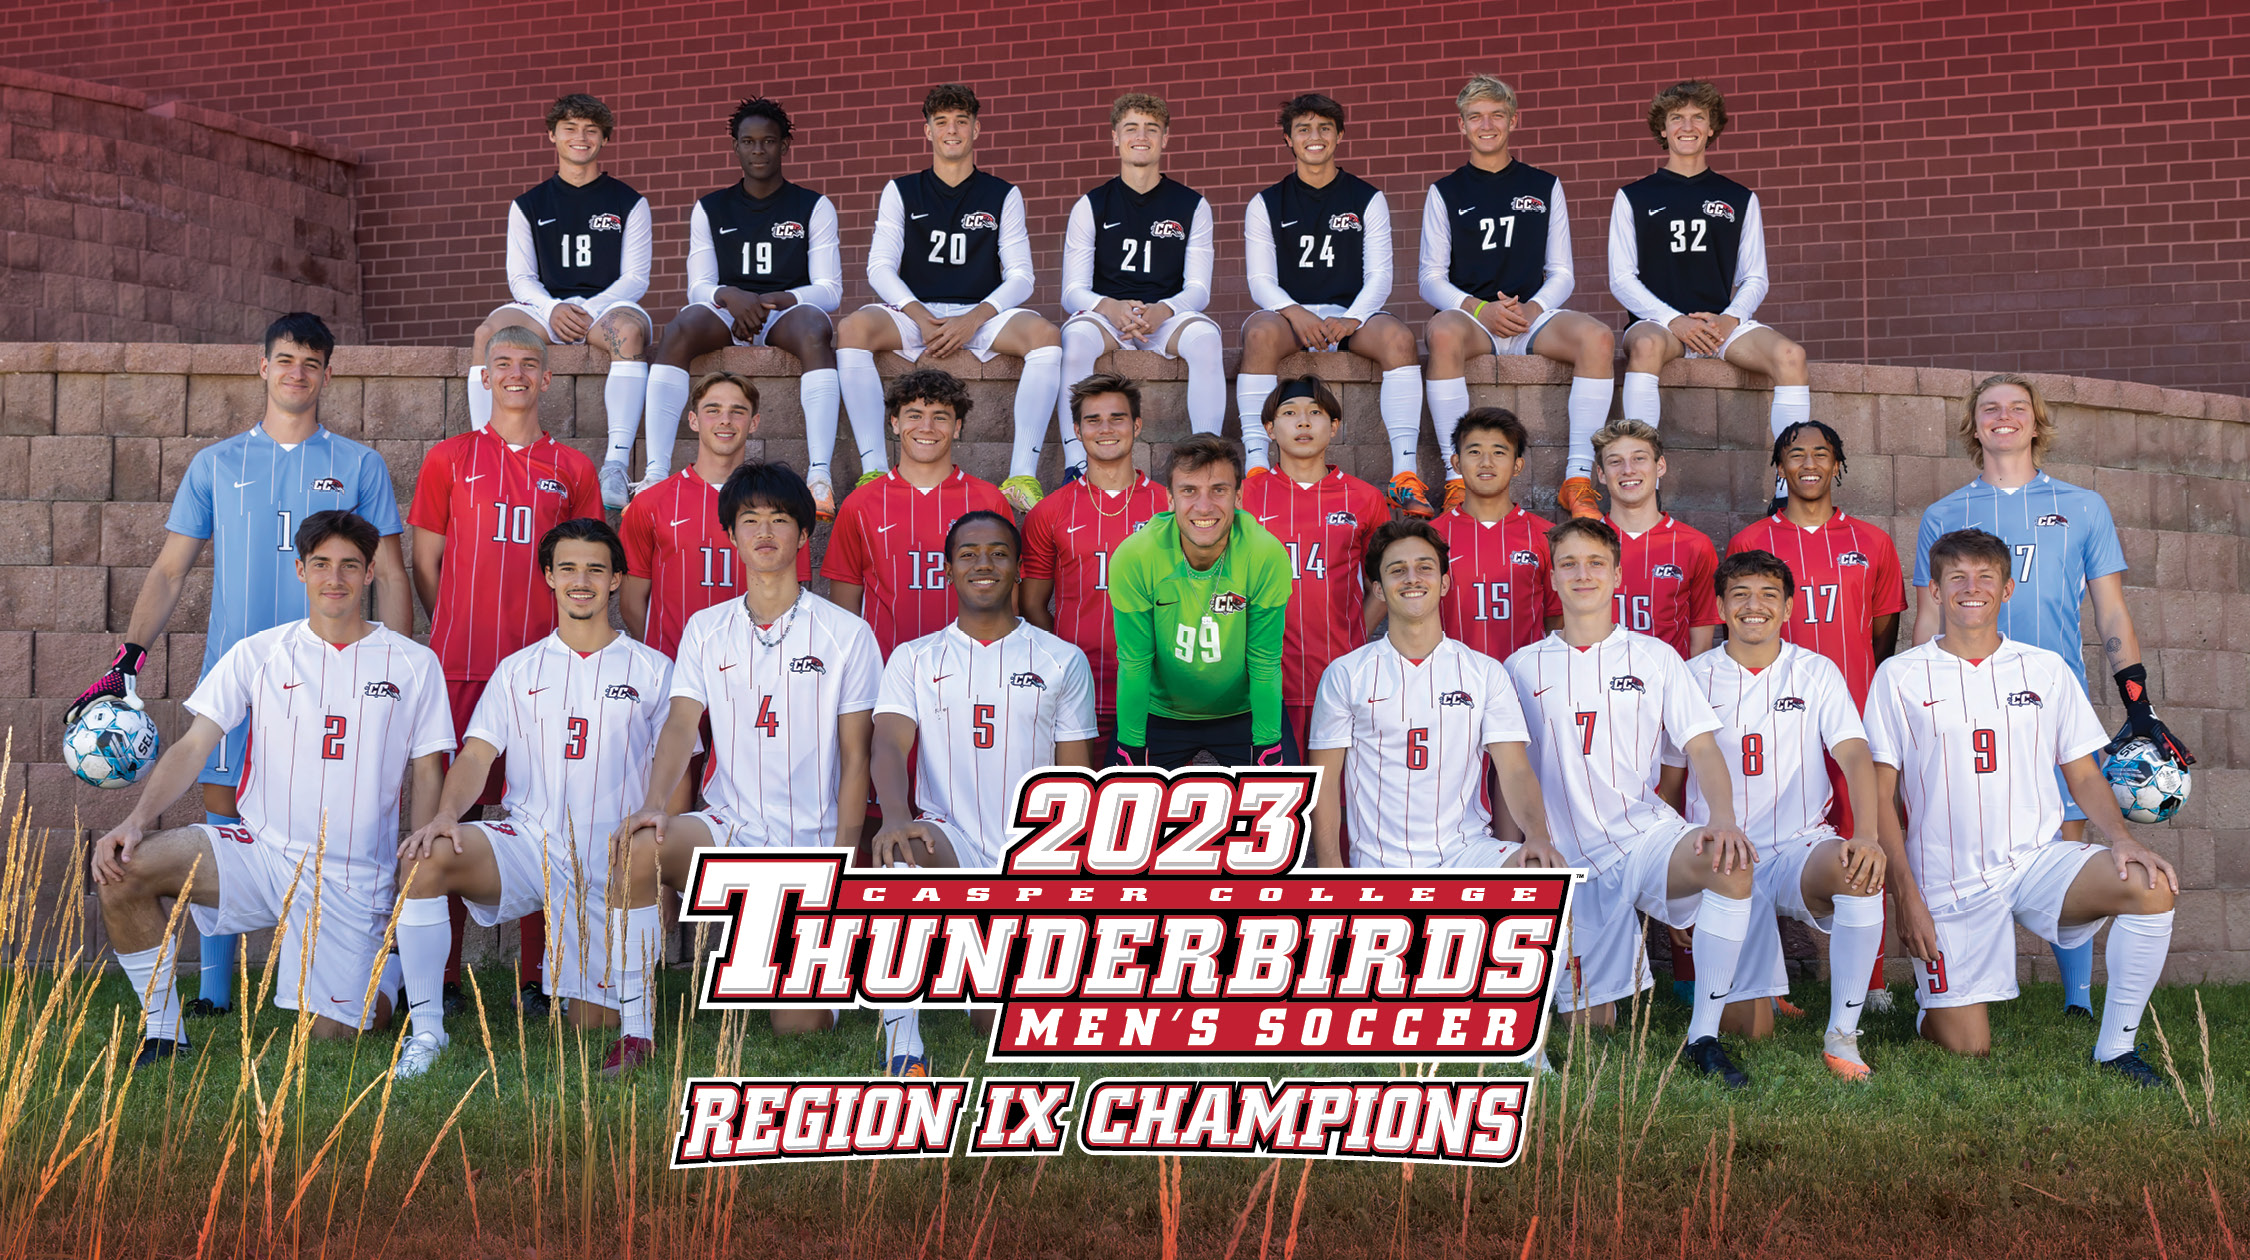 2023 Region IX Champions - Men's Soccer